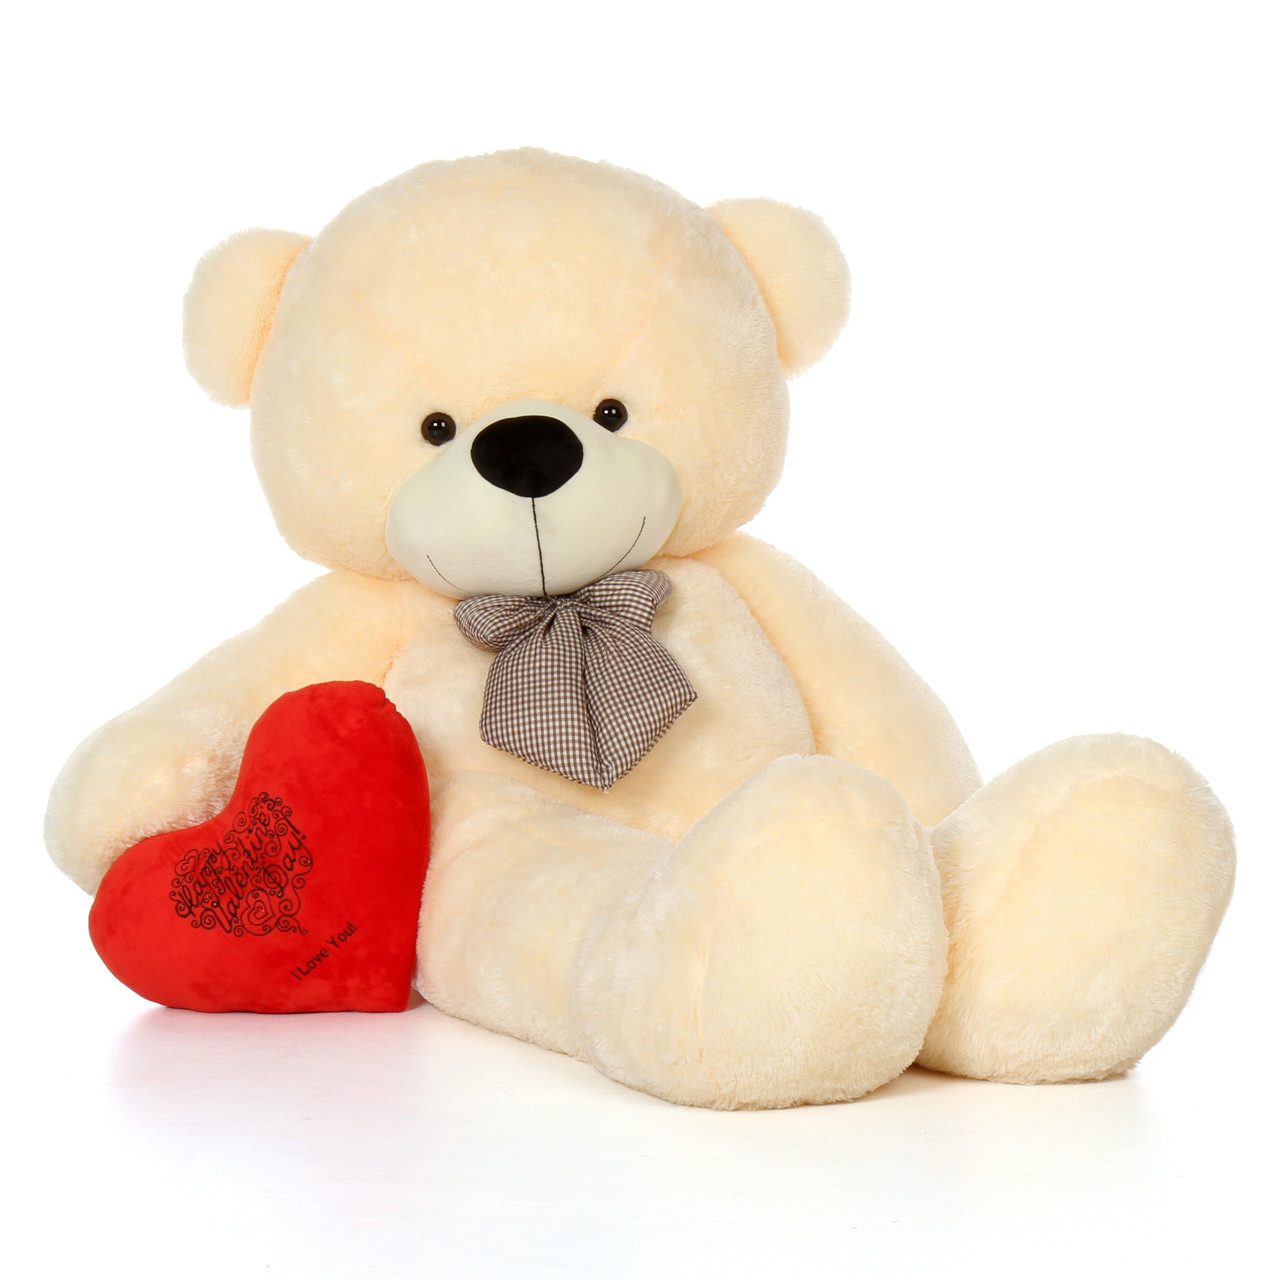 heart with teddy bear